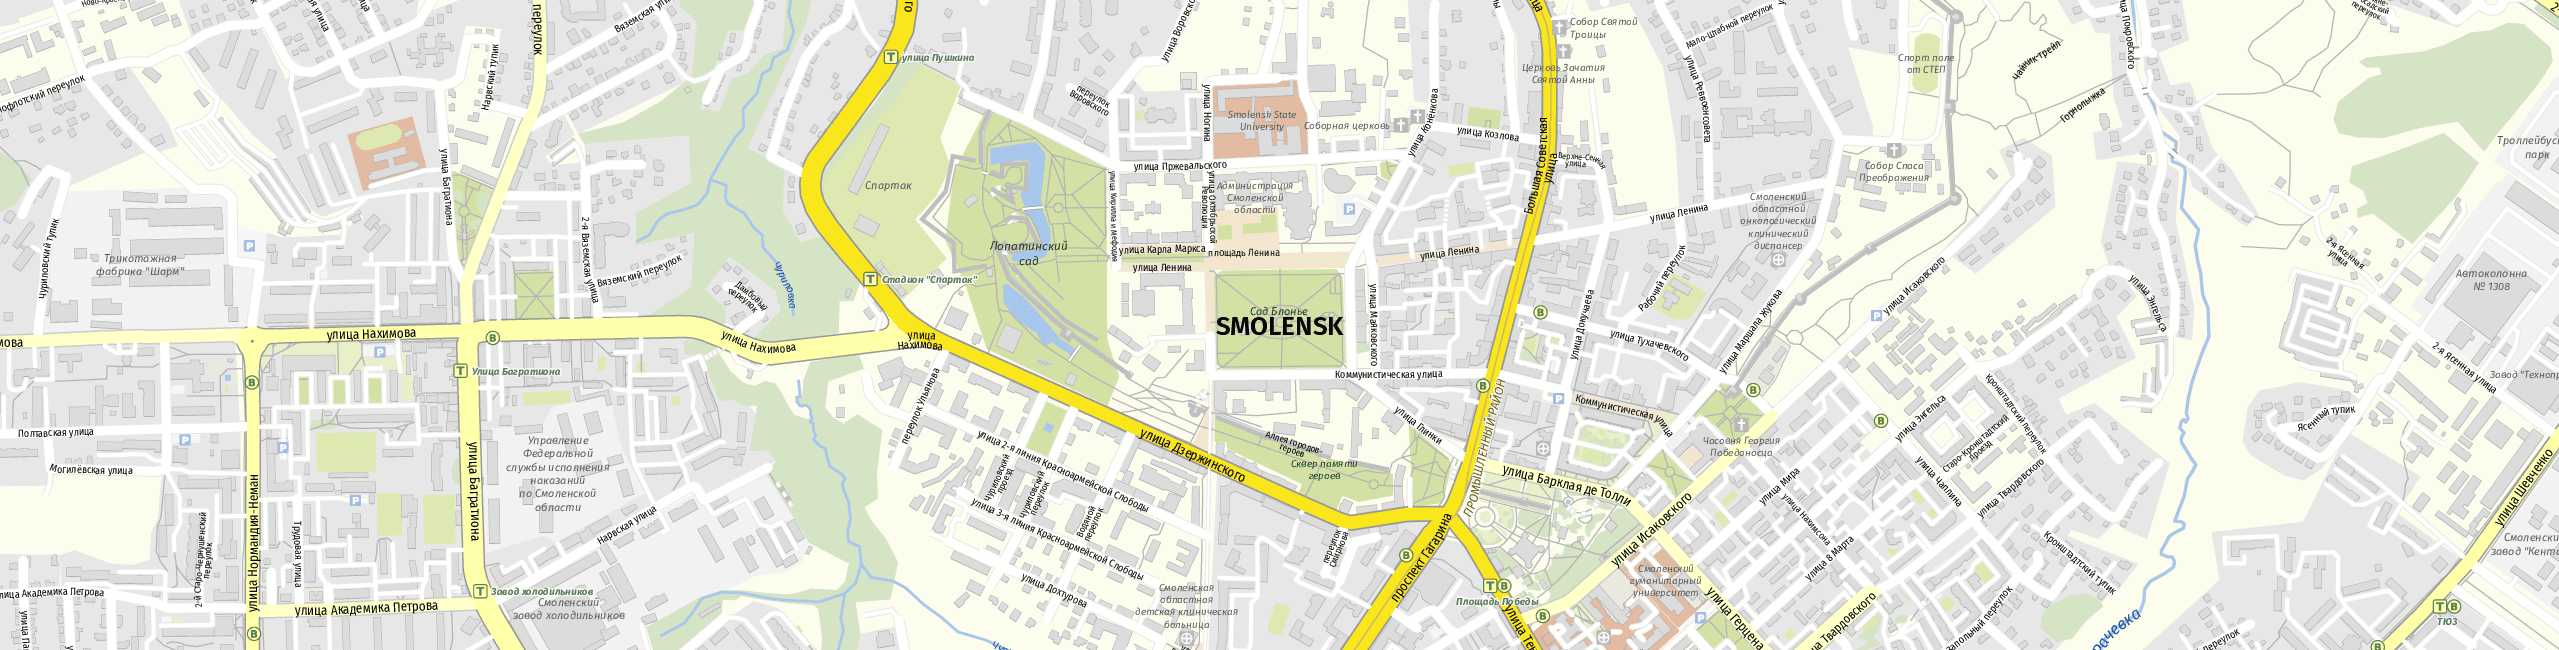 Stadtplan Smolensk zum Downloaden.